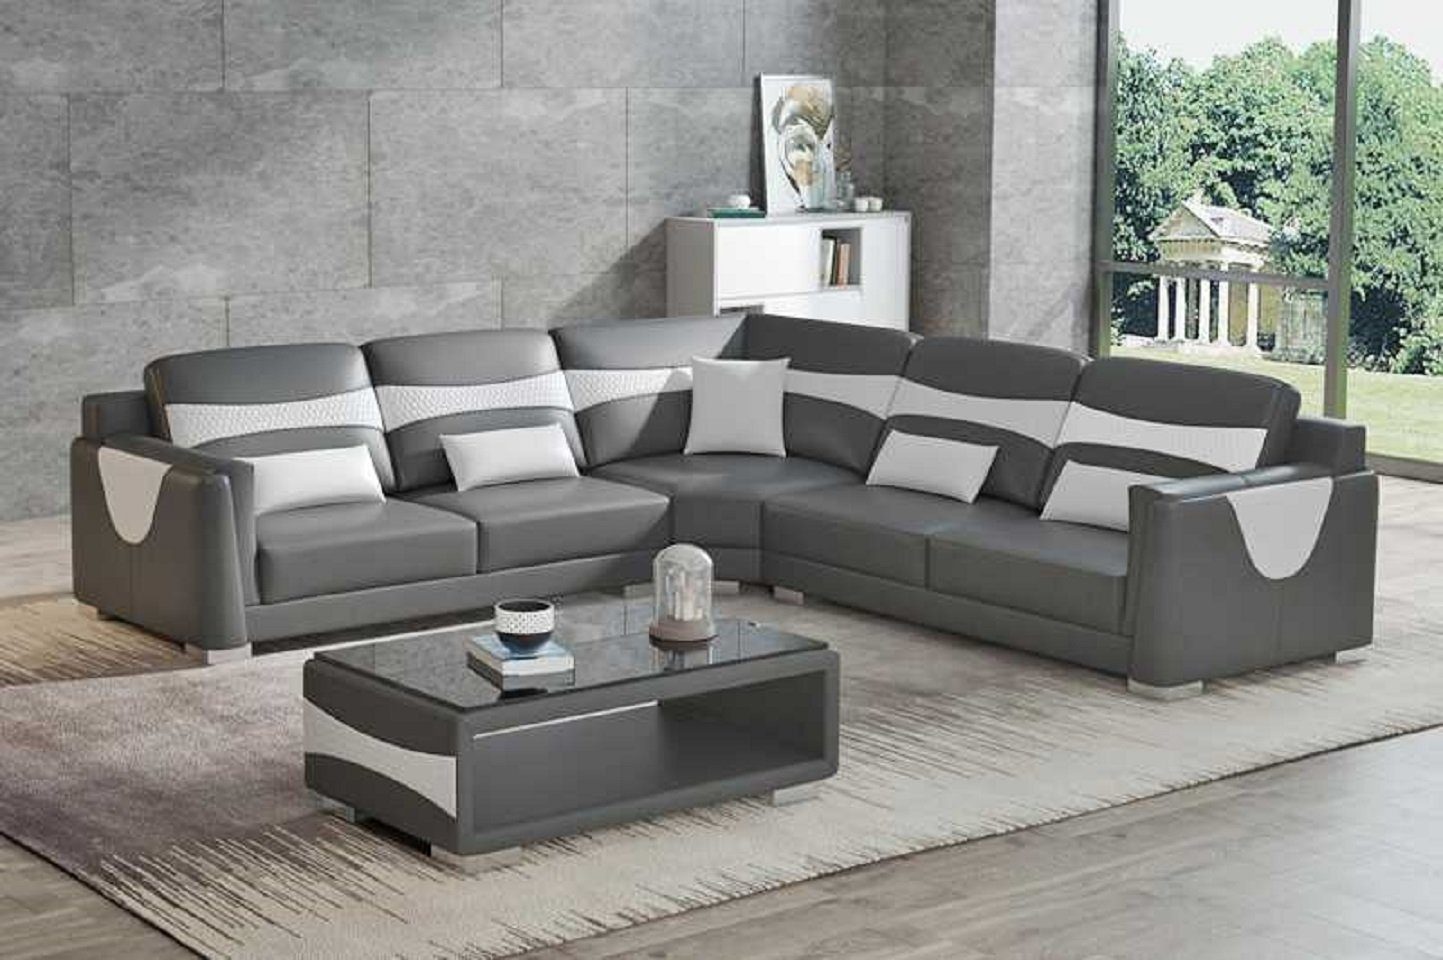 Design Ecksofa 3 JVmoebel L Sofa, Grau in Made Kunstleder Europe Couch Teile, Eckgarnitur Ledersofa Form Ecksofa